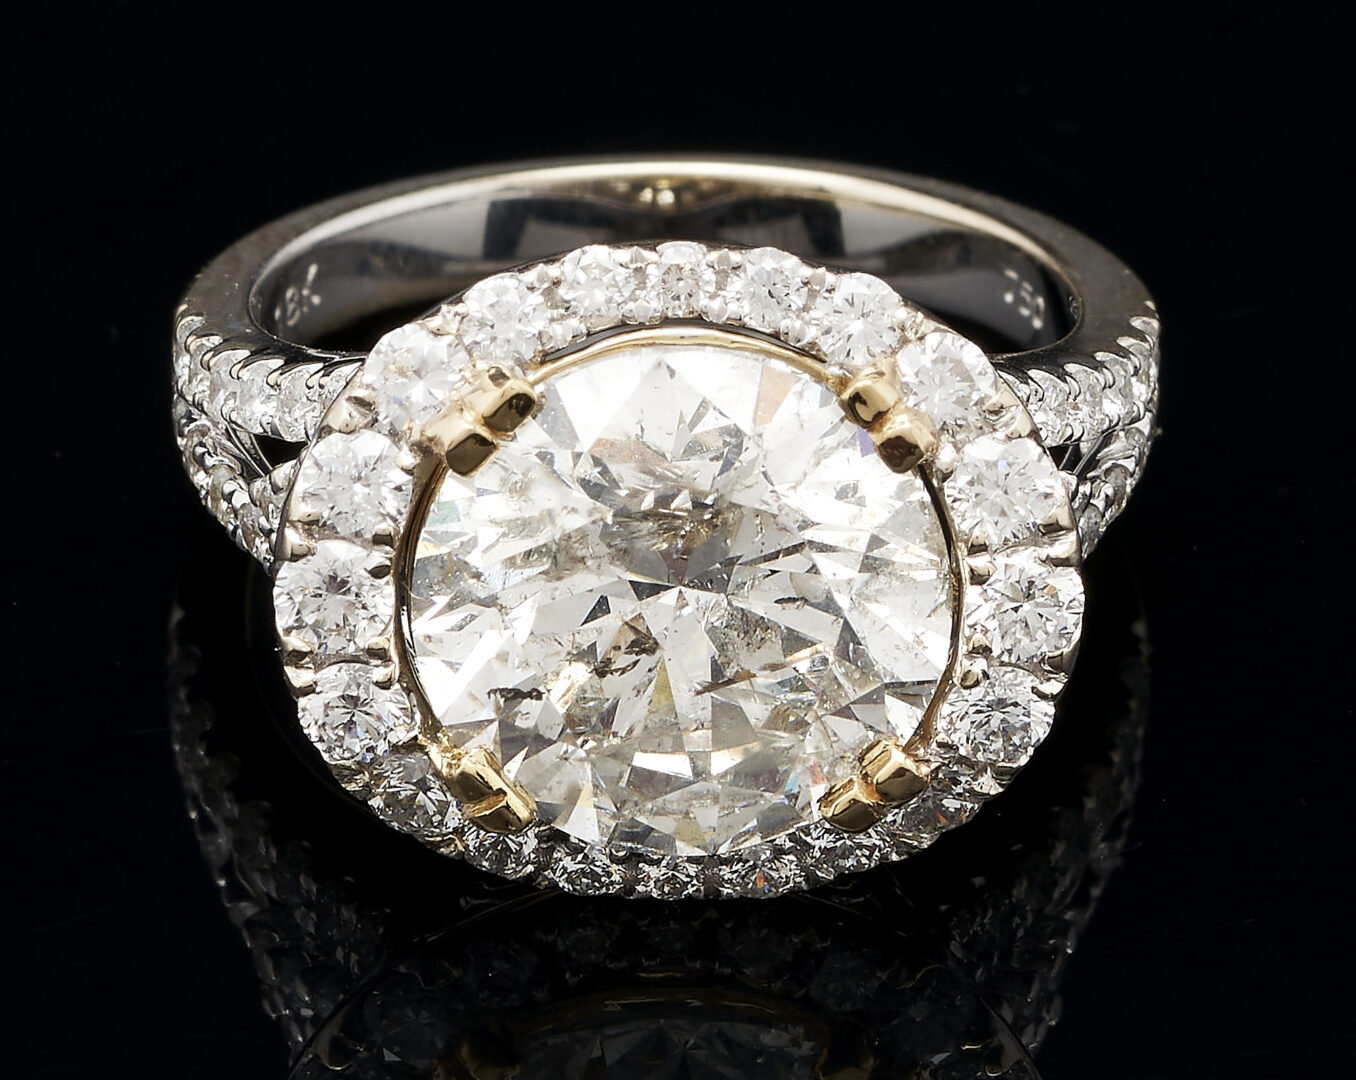 Lot 295: Ladies 5.11 Carat Round Brilliant Diamond Ring, GIA Report